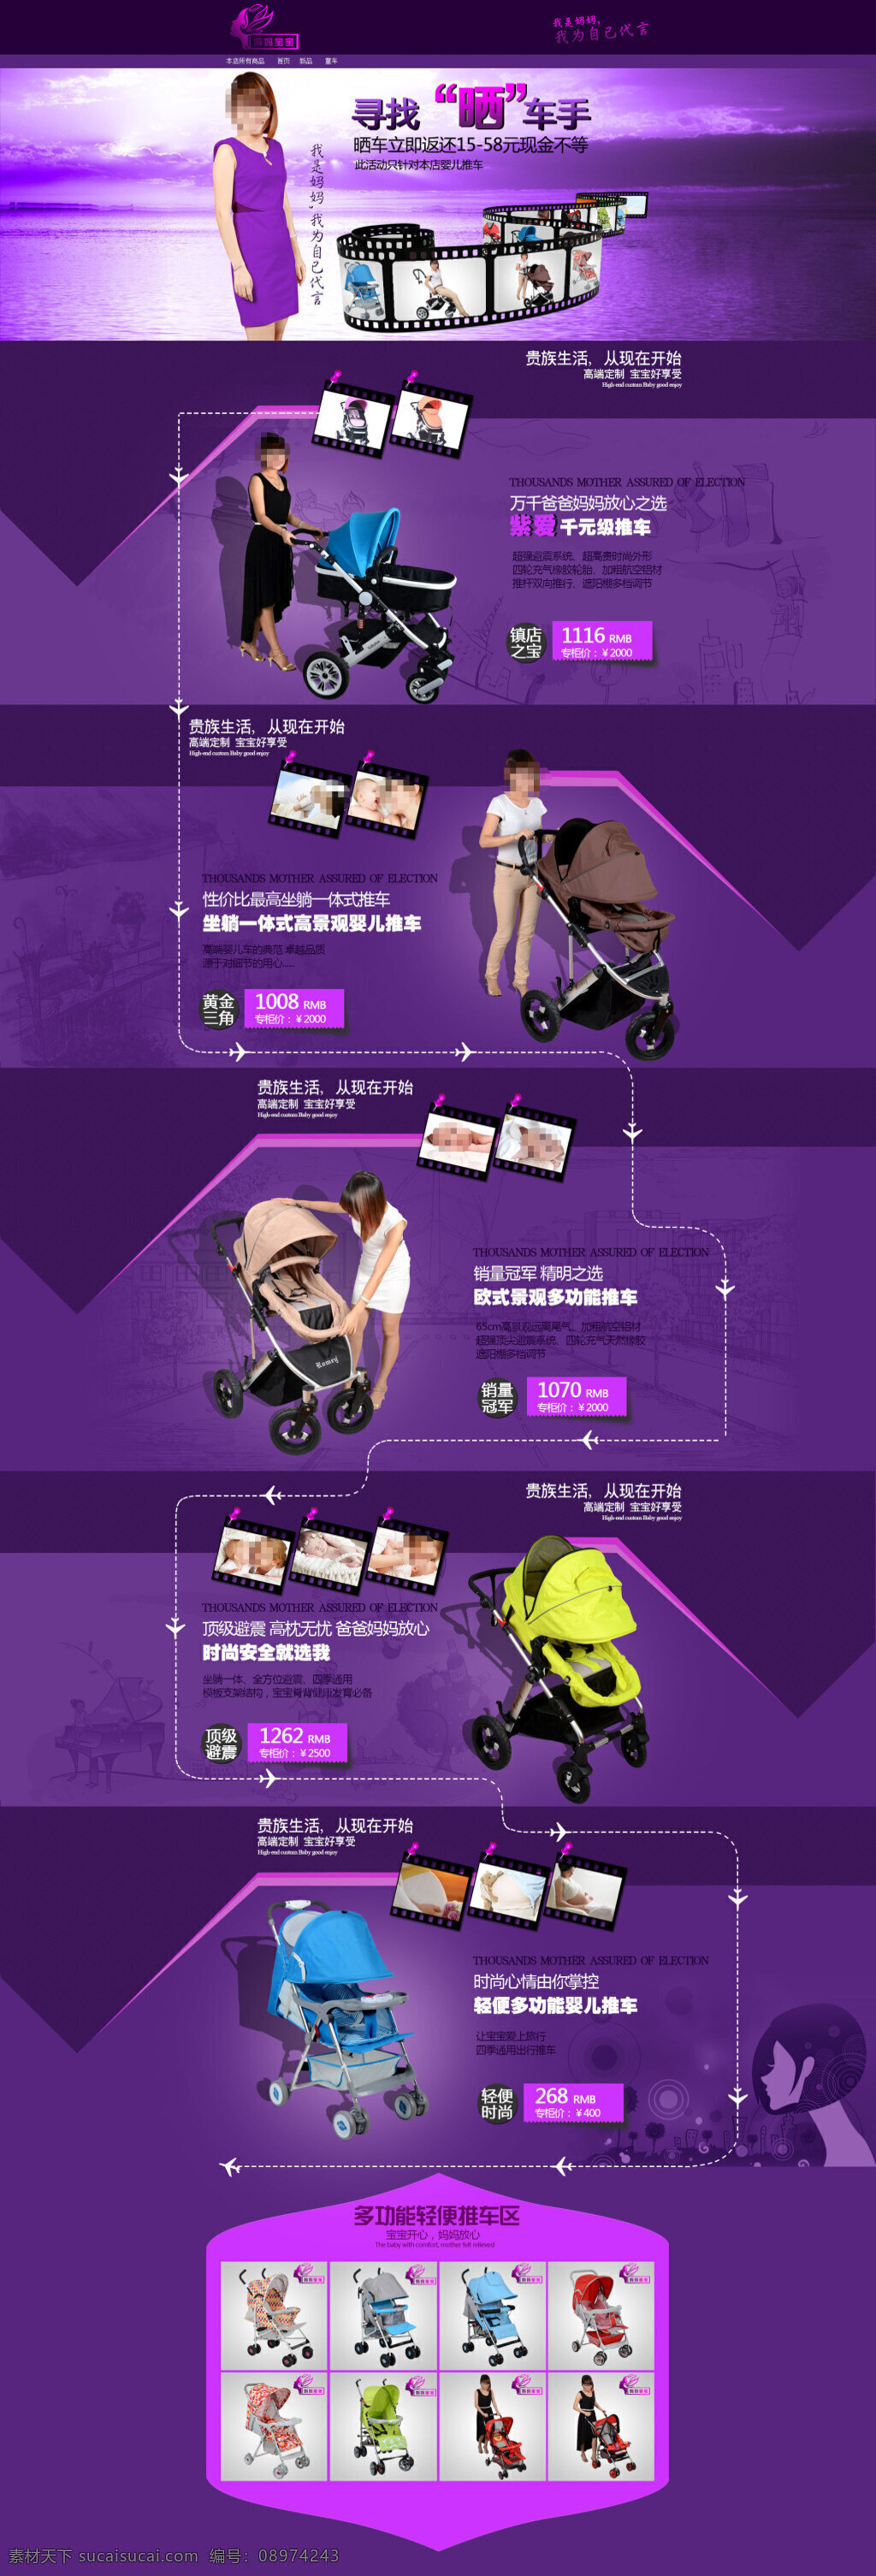 婴儿 手推车 活动 促销 淘宝 首页 店铺 海报 活动促销海报 淘宝海报 psd海报 紫色